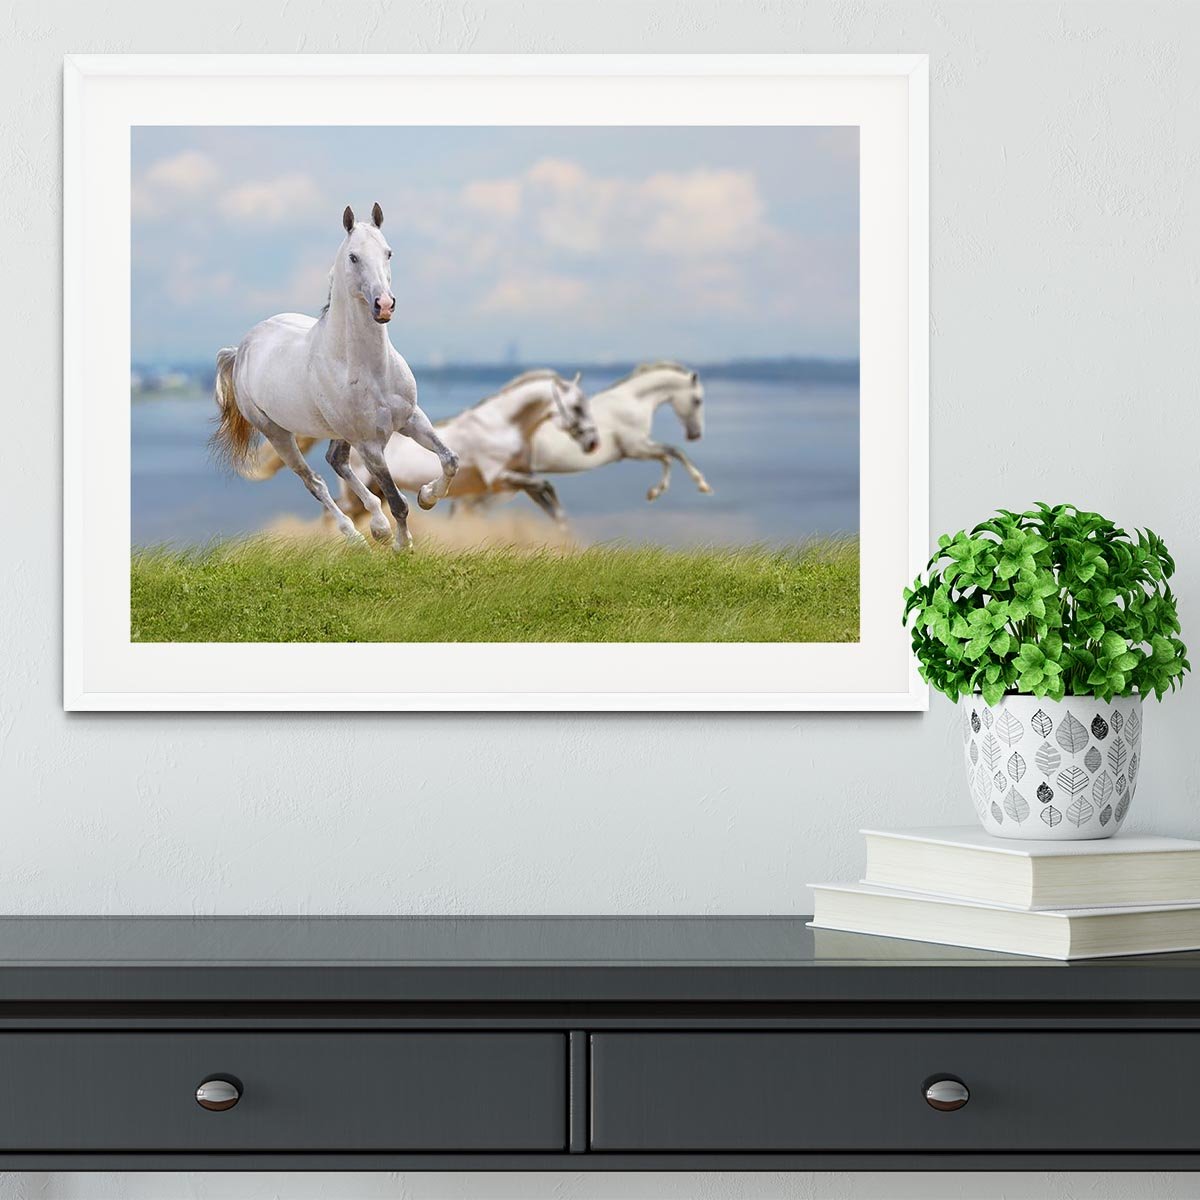 White horses running near water Framed Print - Canvas Art Rocks - 5